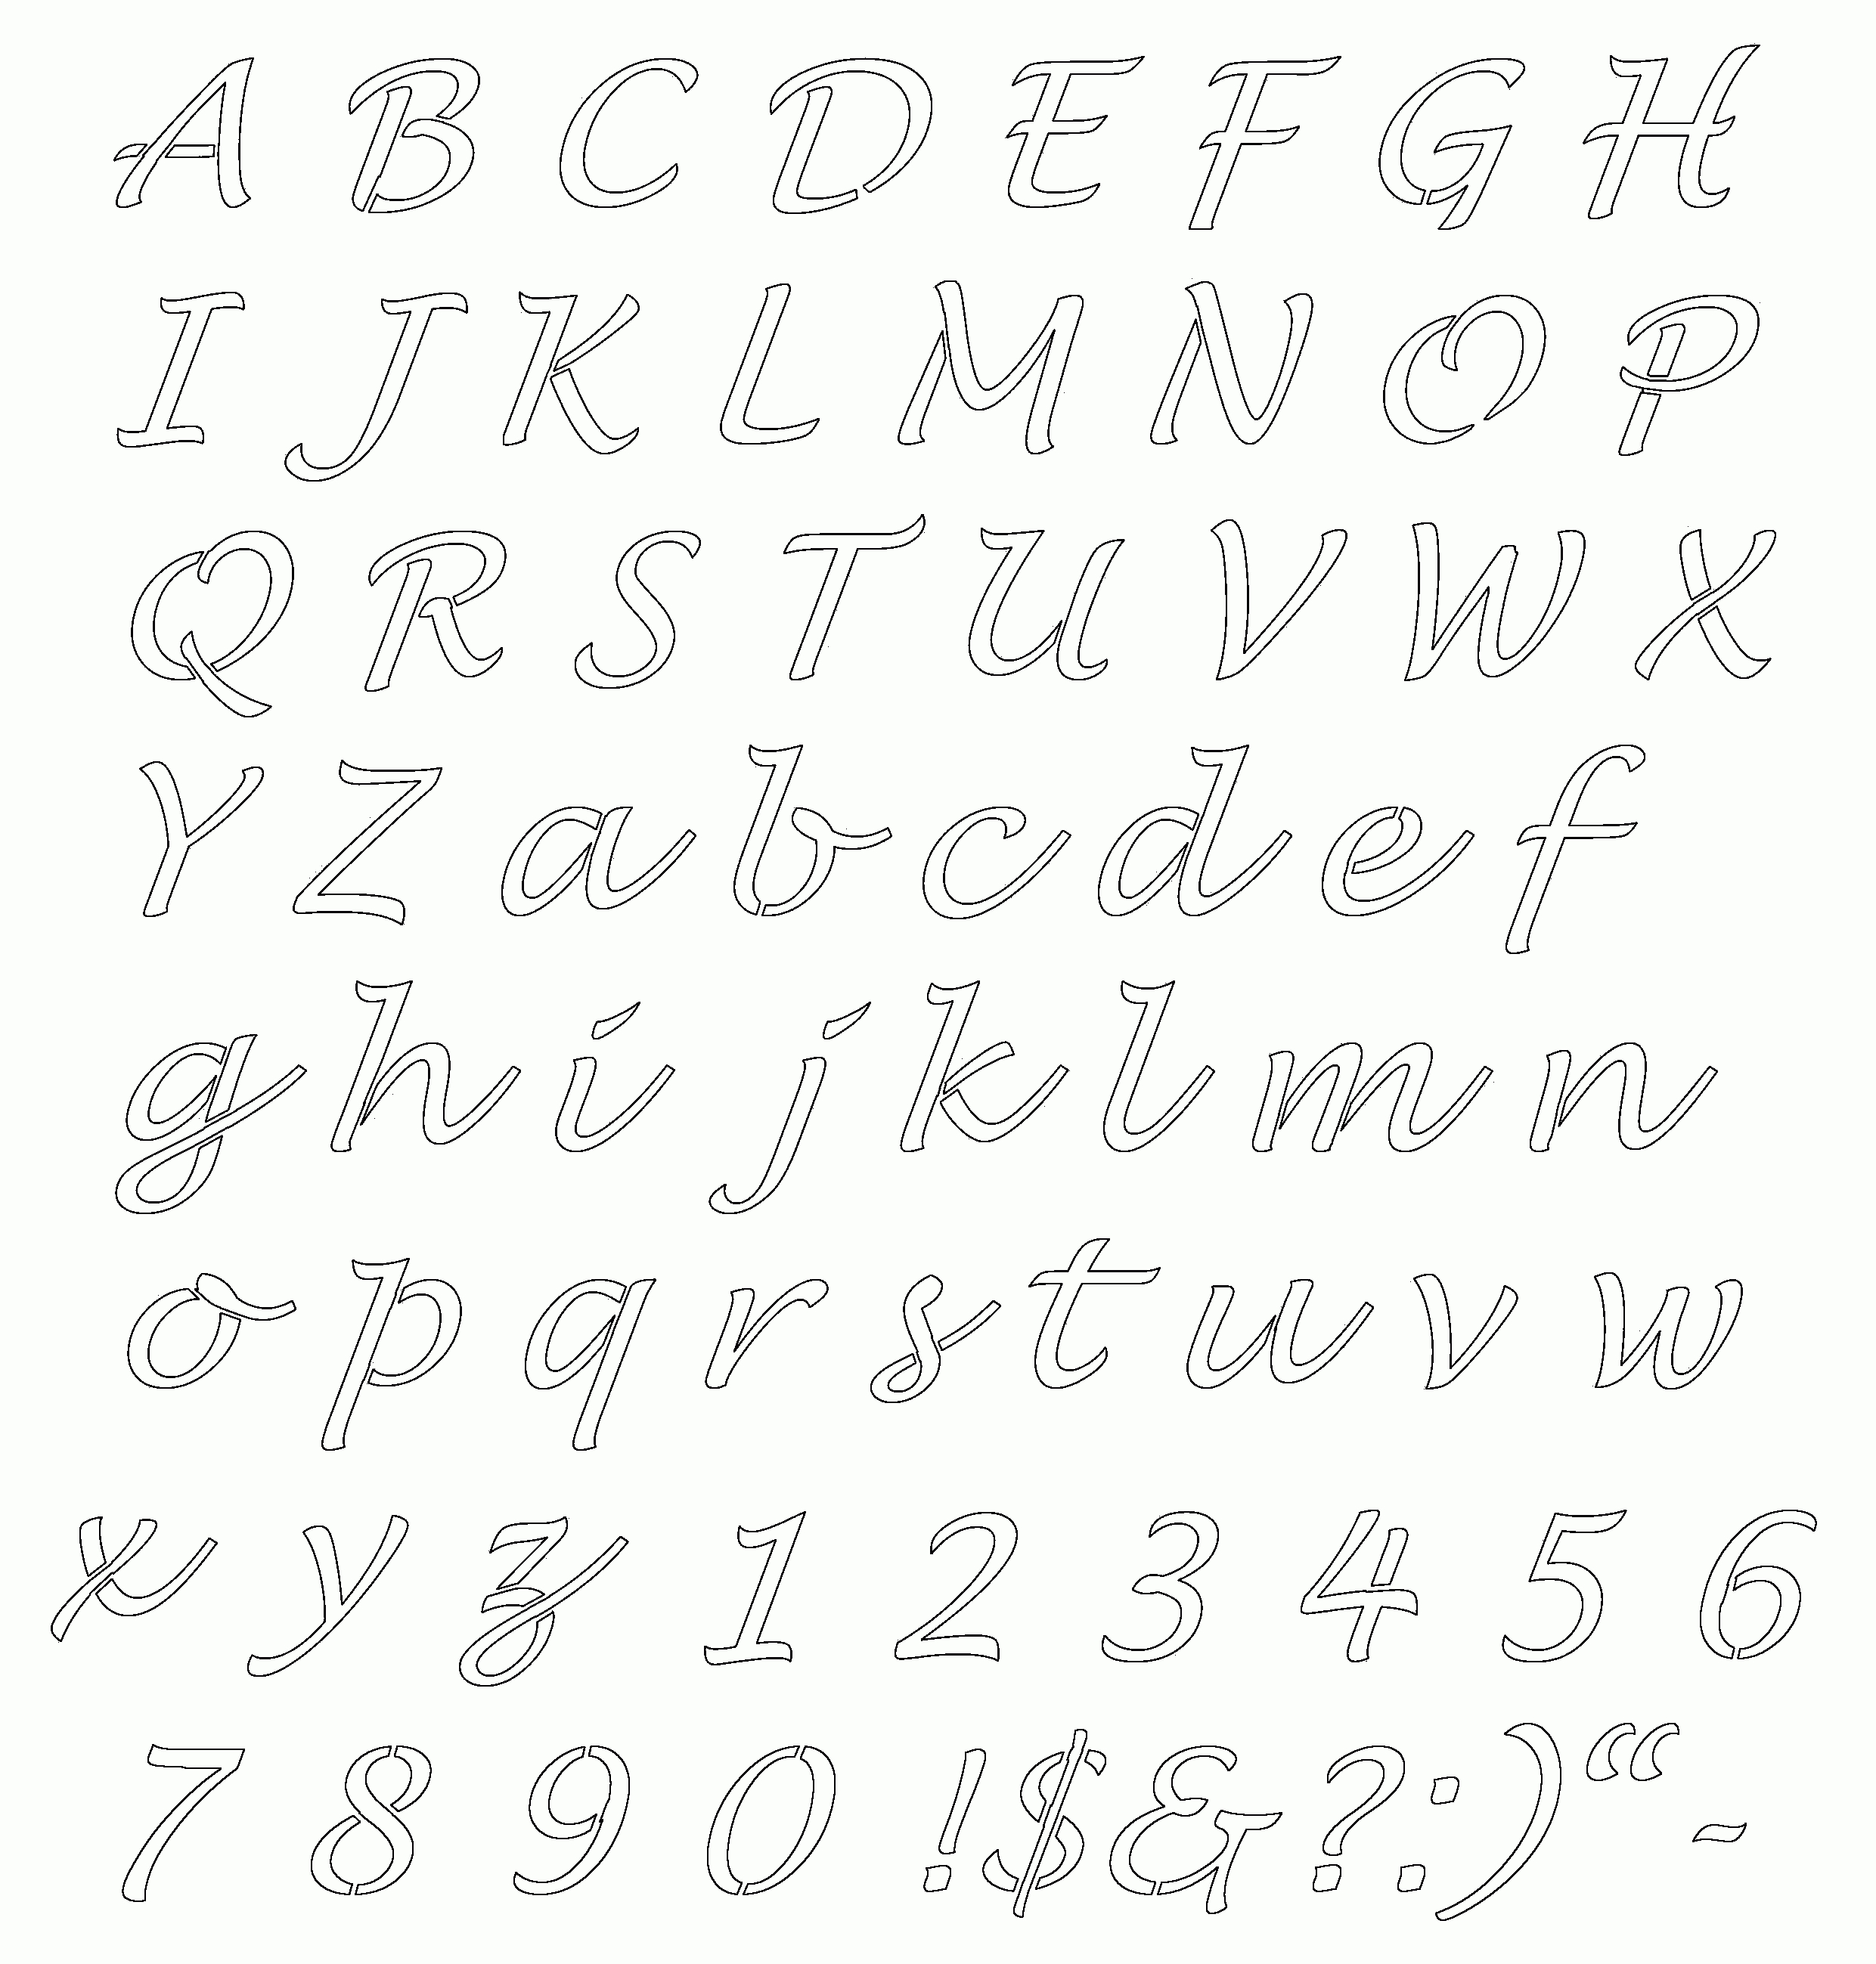 Free Online Alphabet Templates | Stencils Free Printable Alphabetaug - Free Printable Letter Stencils